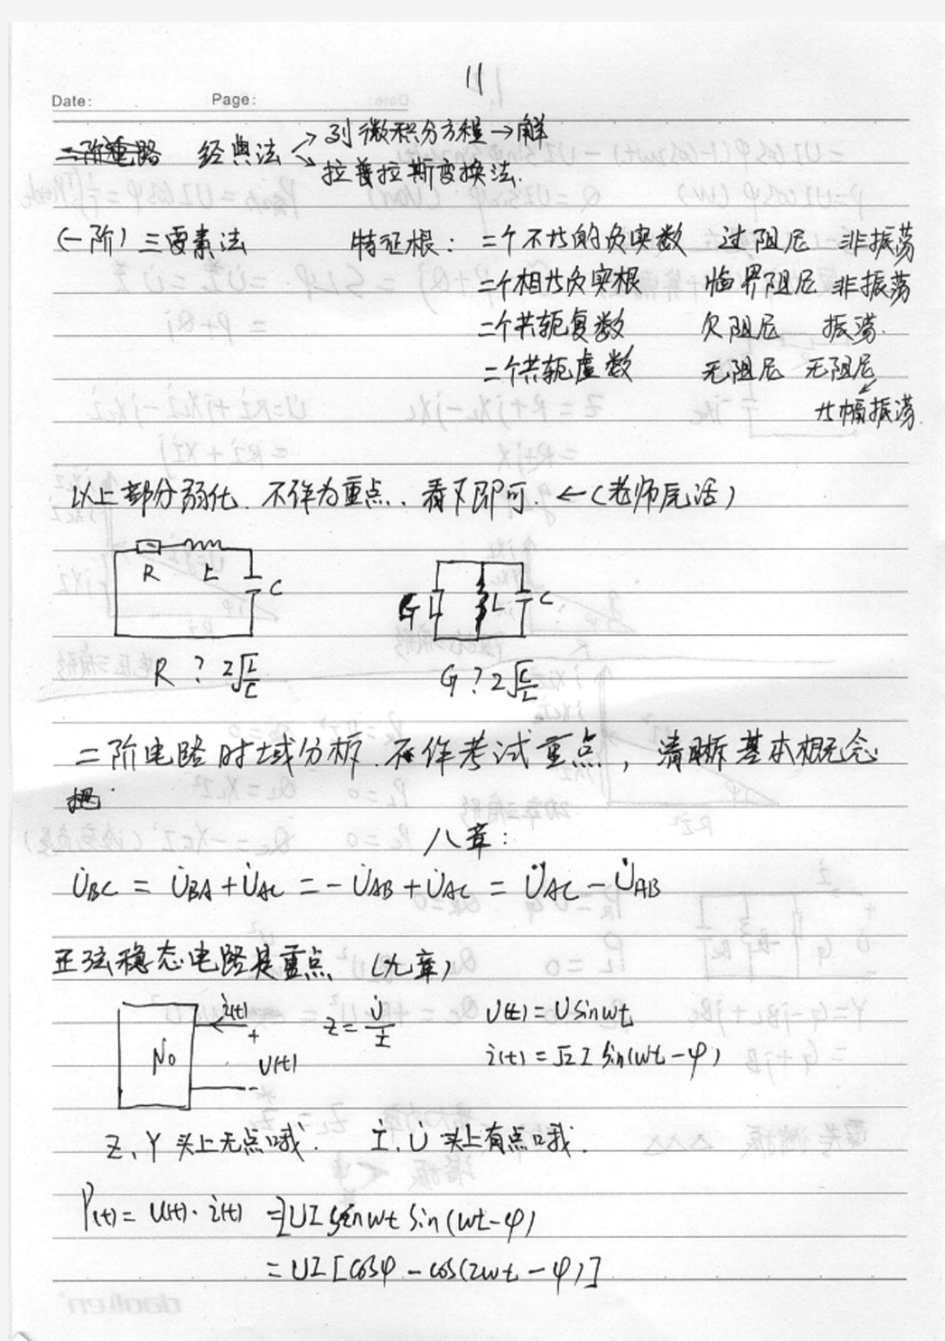 重庆大学电路原理考研笔记及部分试题